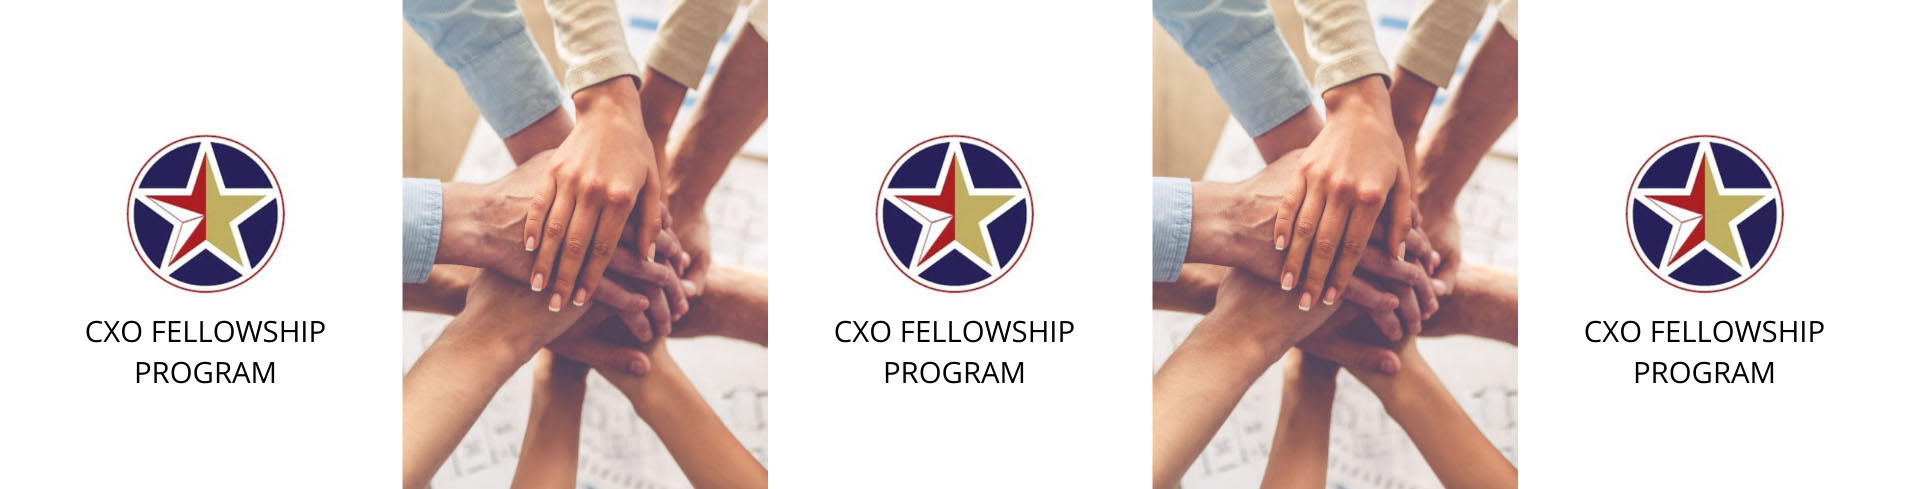 Logo - CXO Fellowship Program.